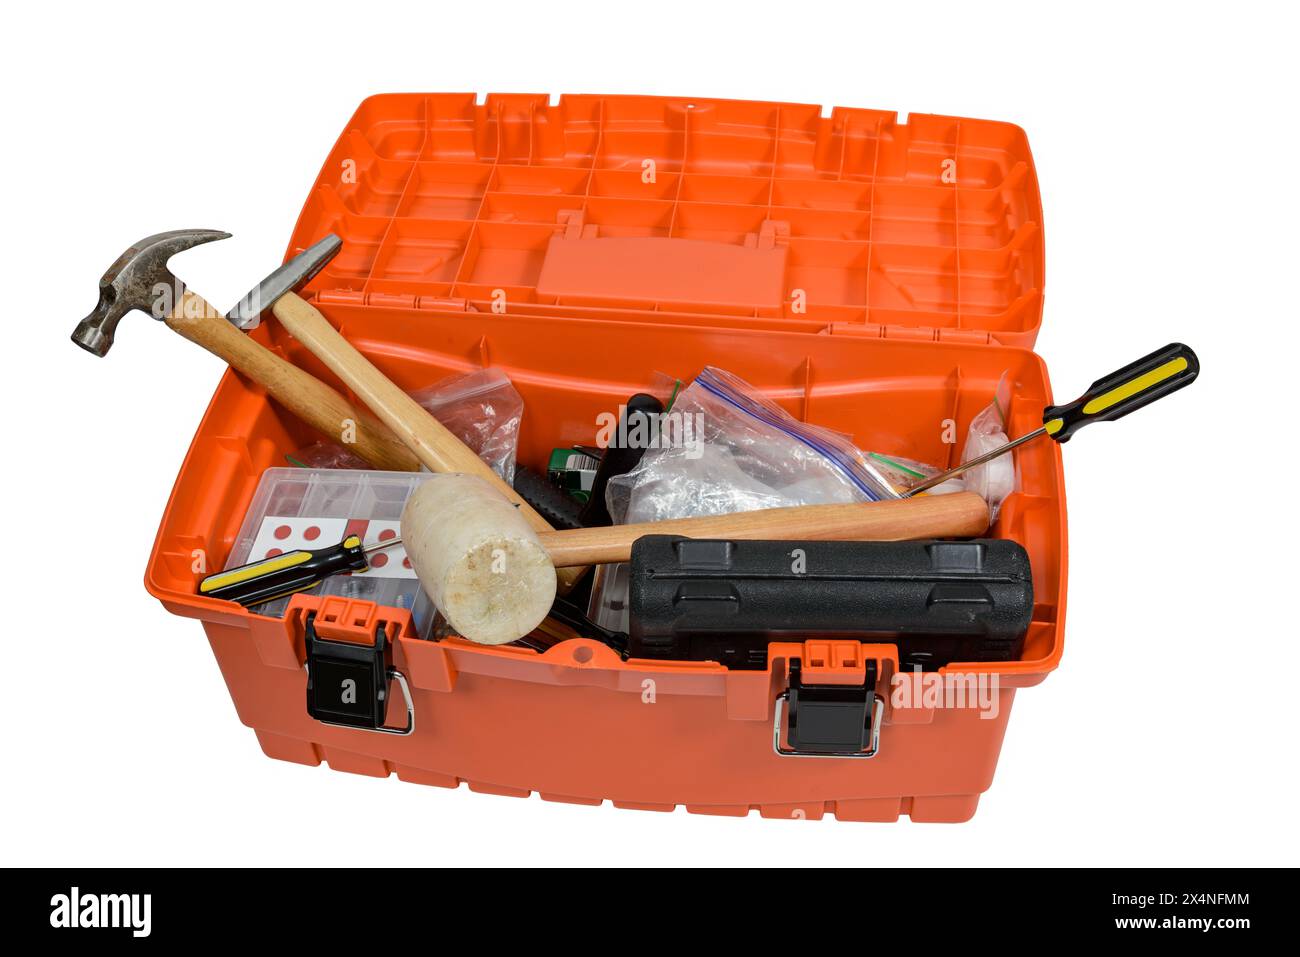 Horizontale Nahaufnahme eines überfüllten orangen Werkzeugkastens auf weißem Hintergrund. Stockfoto